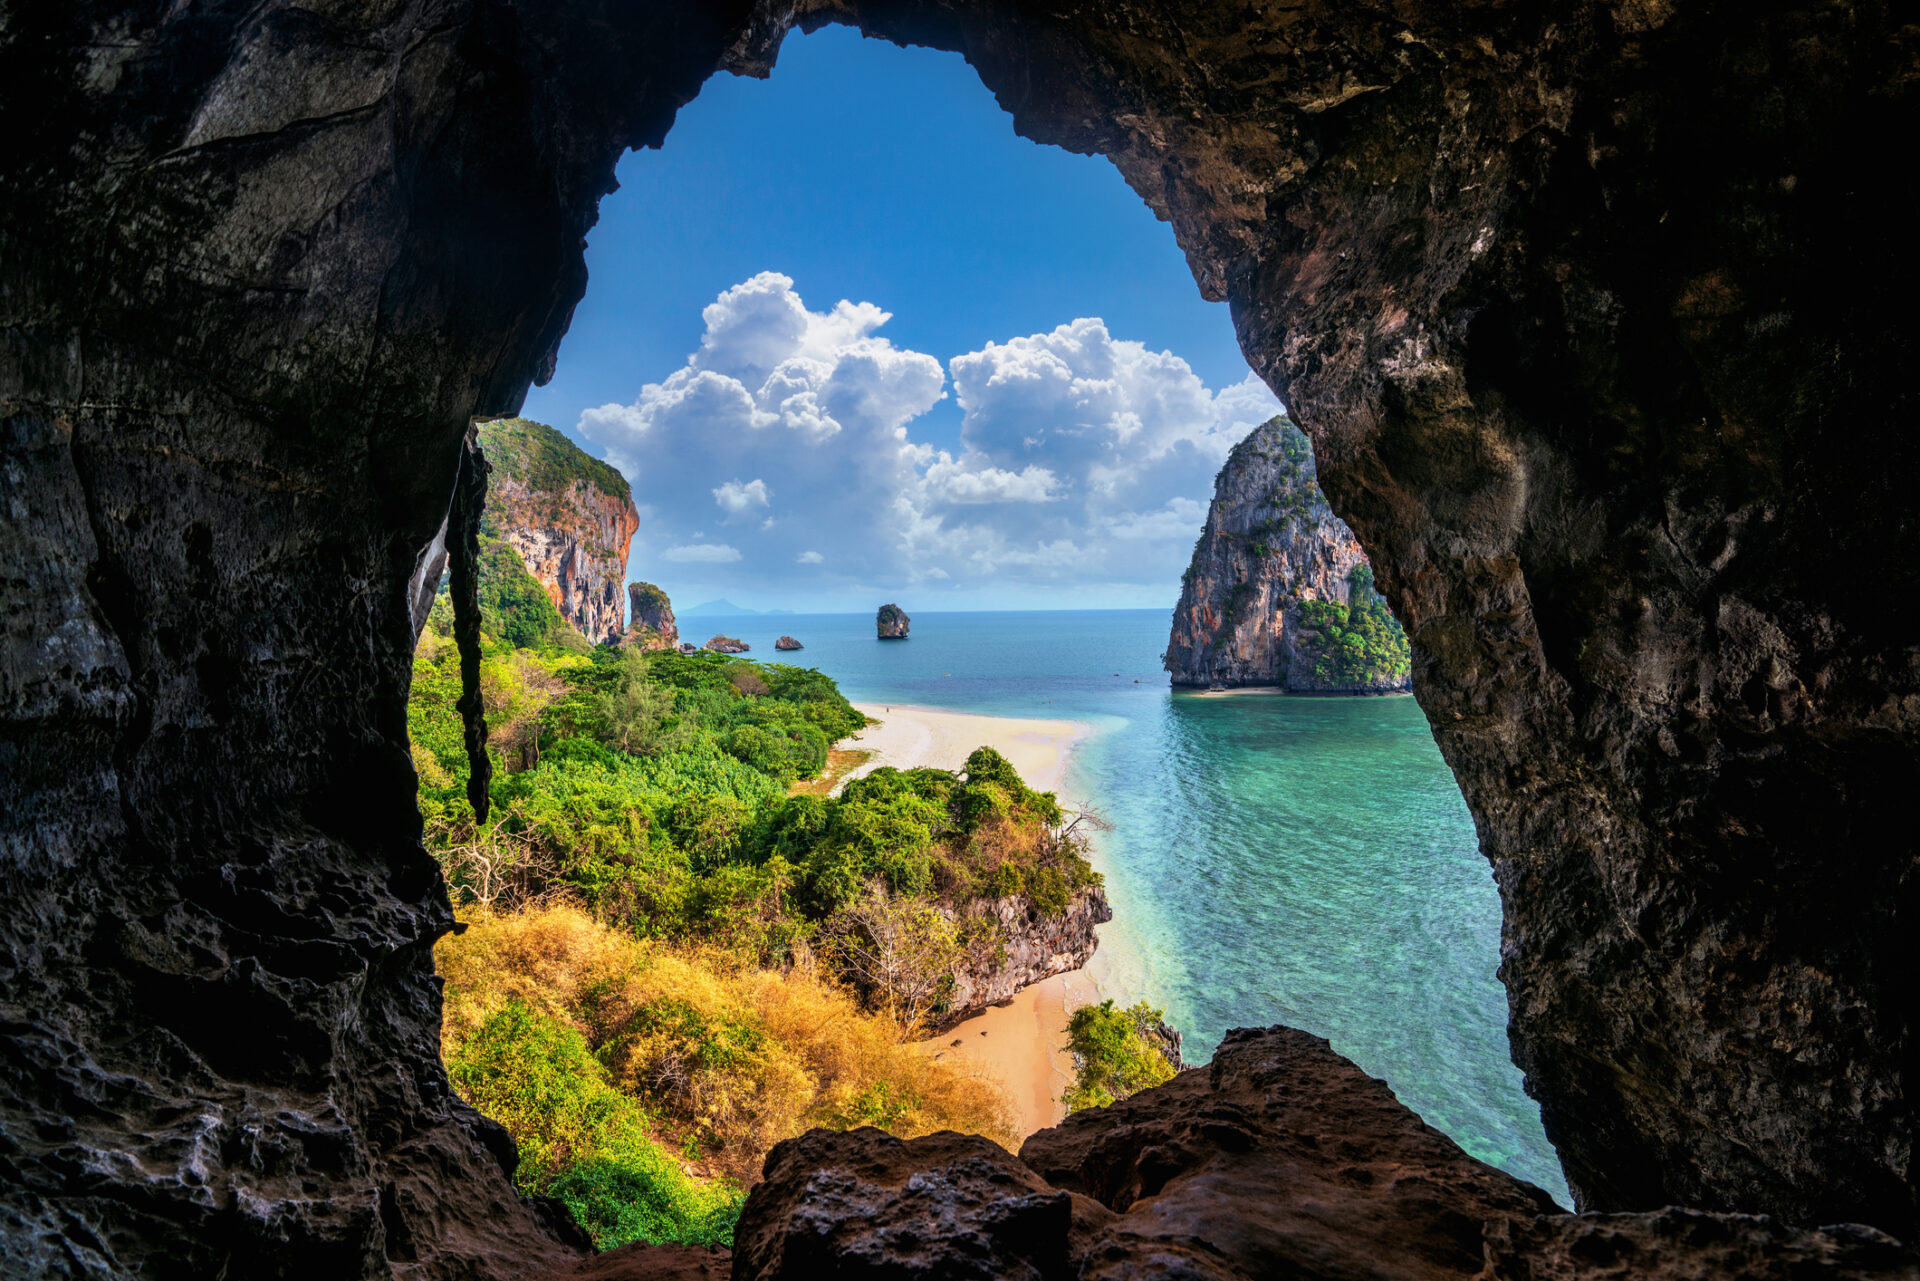 Oplev Krabi. Tag på drømmeferie med din rejsespecialist Thailand Tours